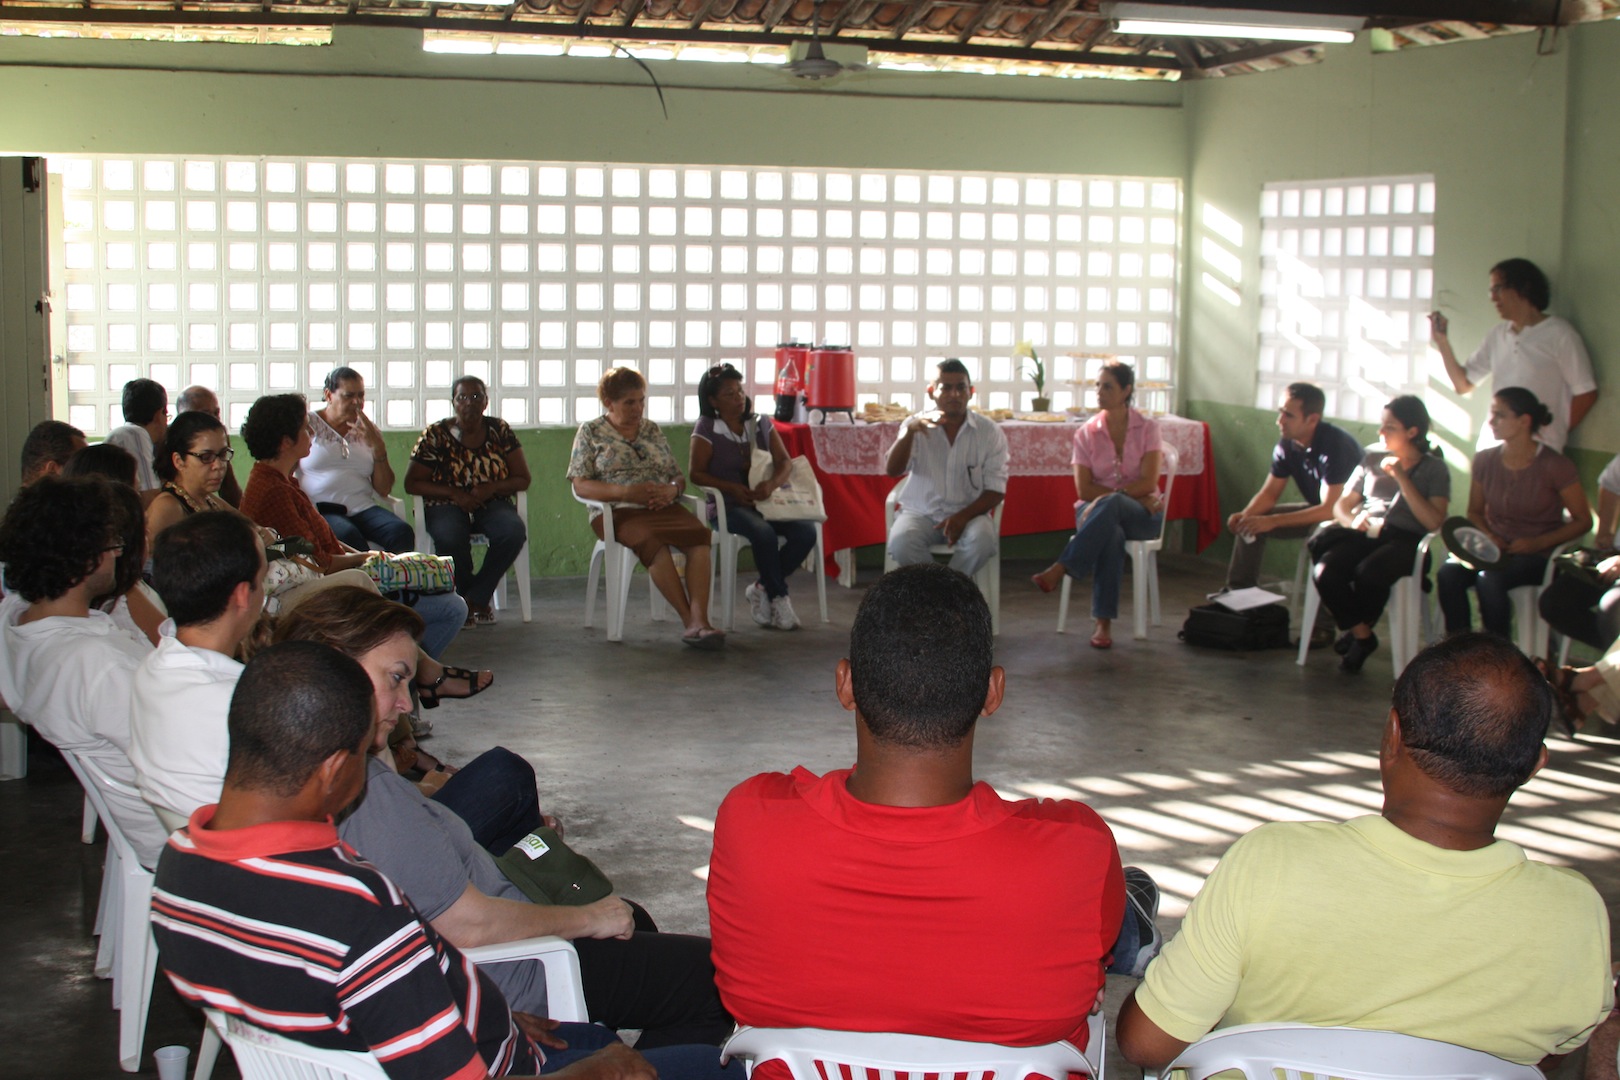 Visita à Comunidade Mustardinha 8, reunião com membros da associação de moradores